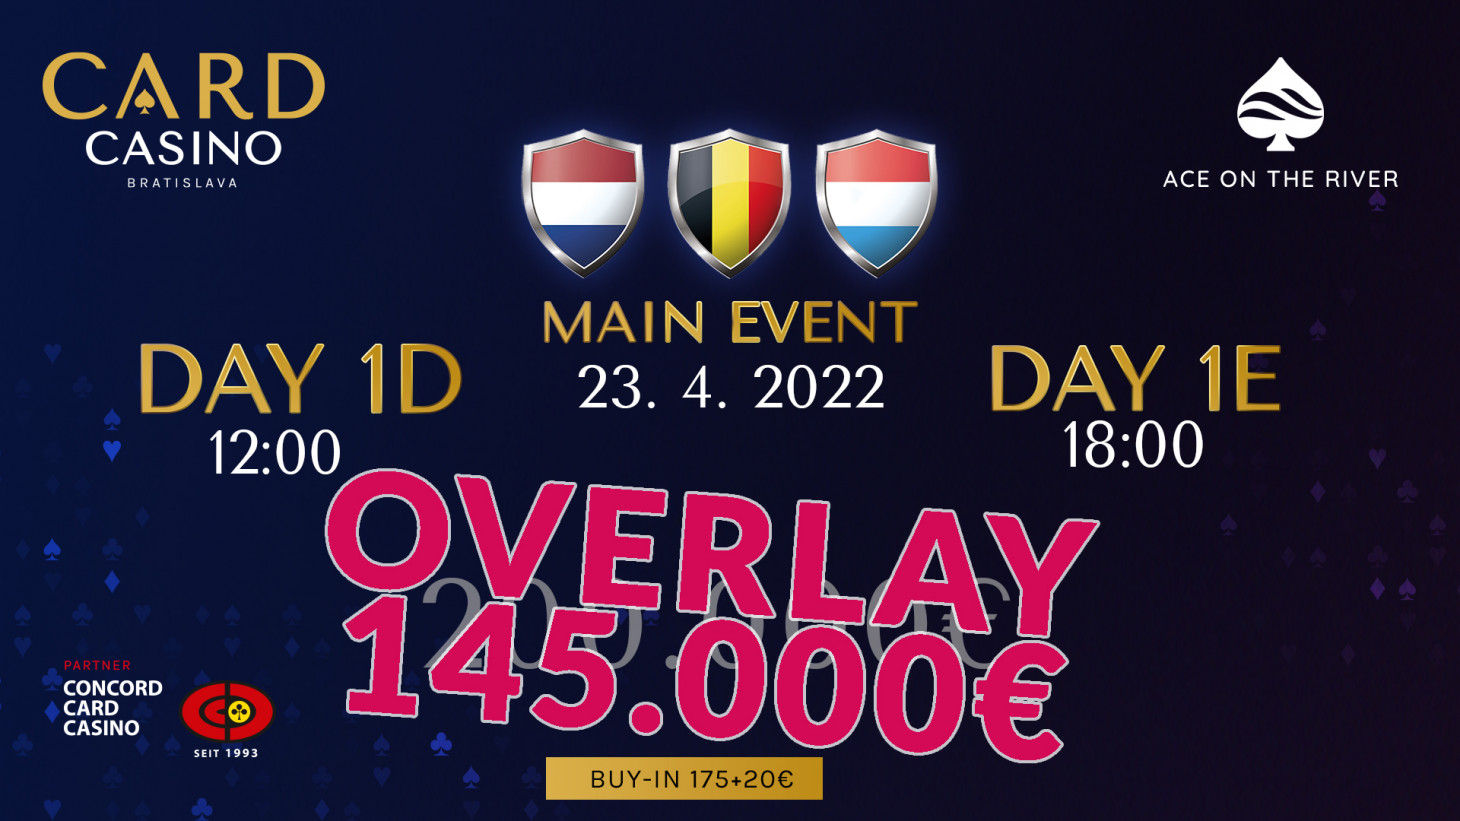 No need to hesitate! The Benelux Poker Tour threatens to OVERLAY 145.000 Euros